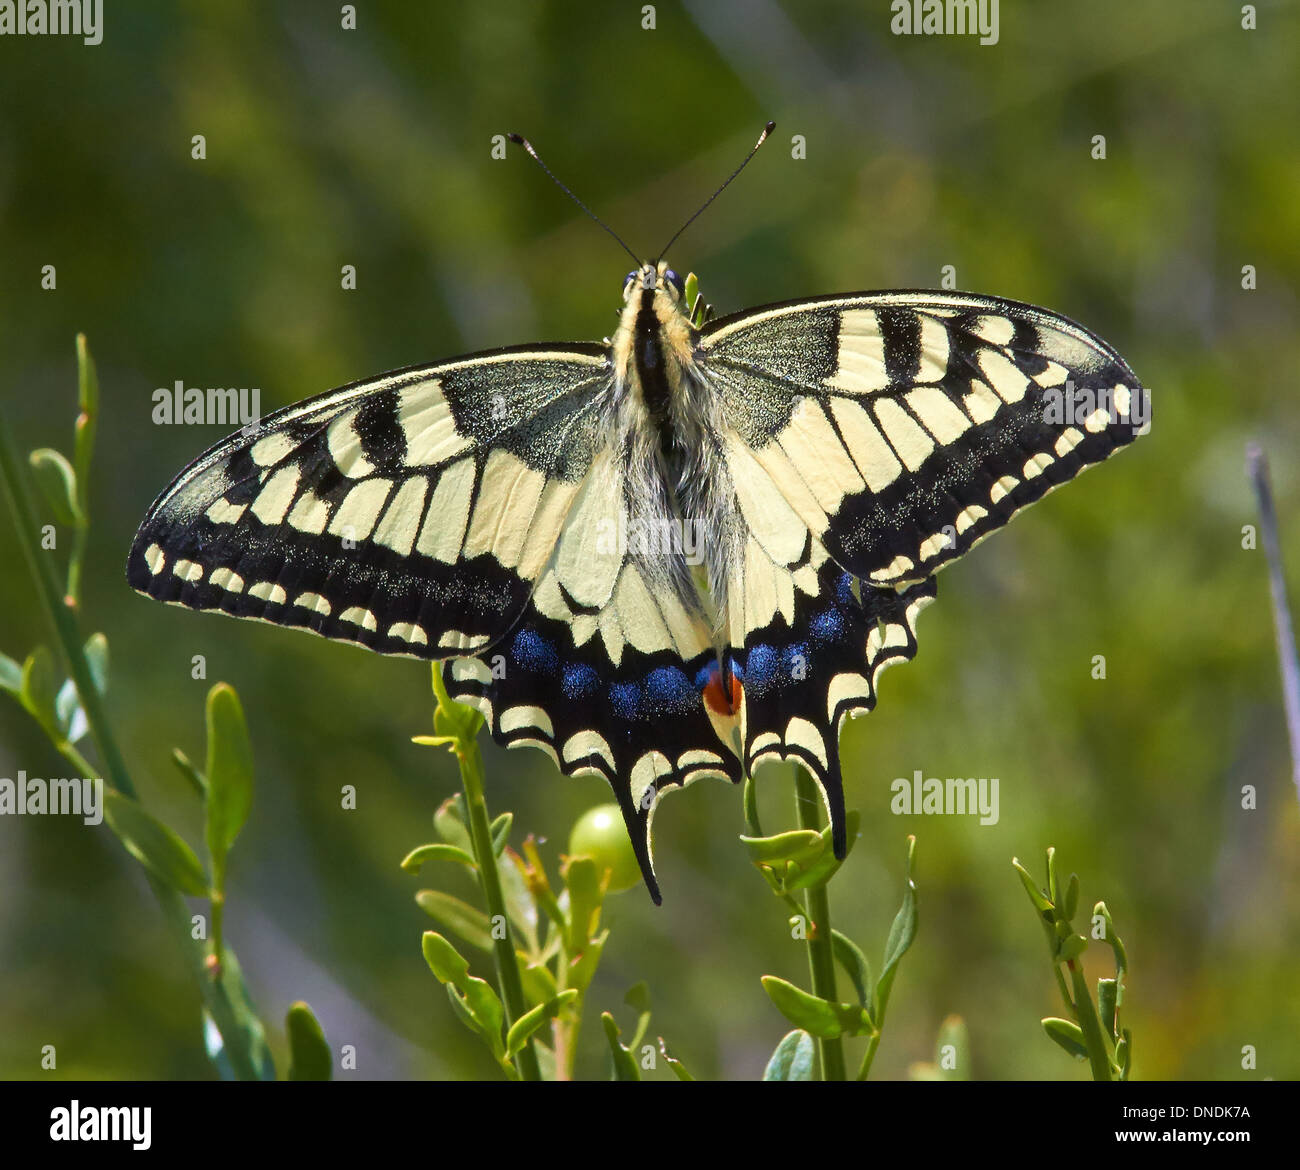 Europäische Schwalbenschwanz Schmetterling in Ruhe auf die vegetation Stockfoto